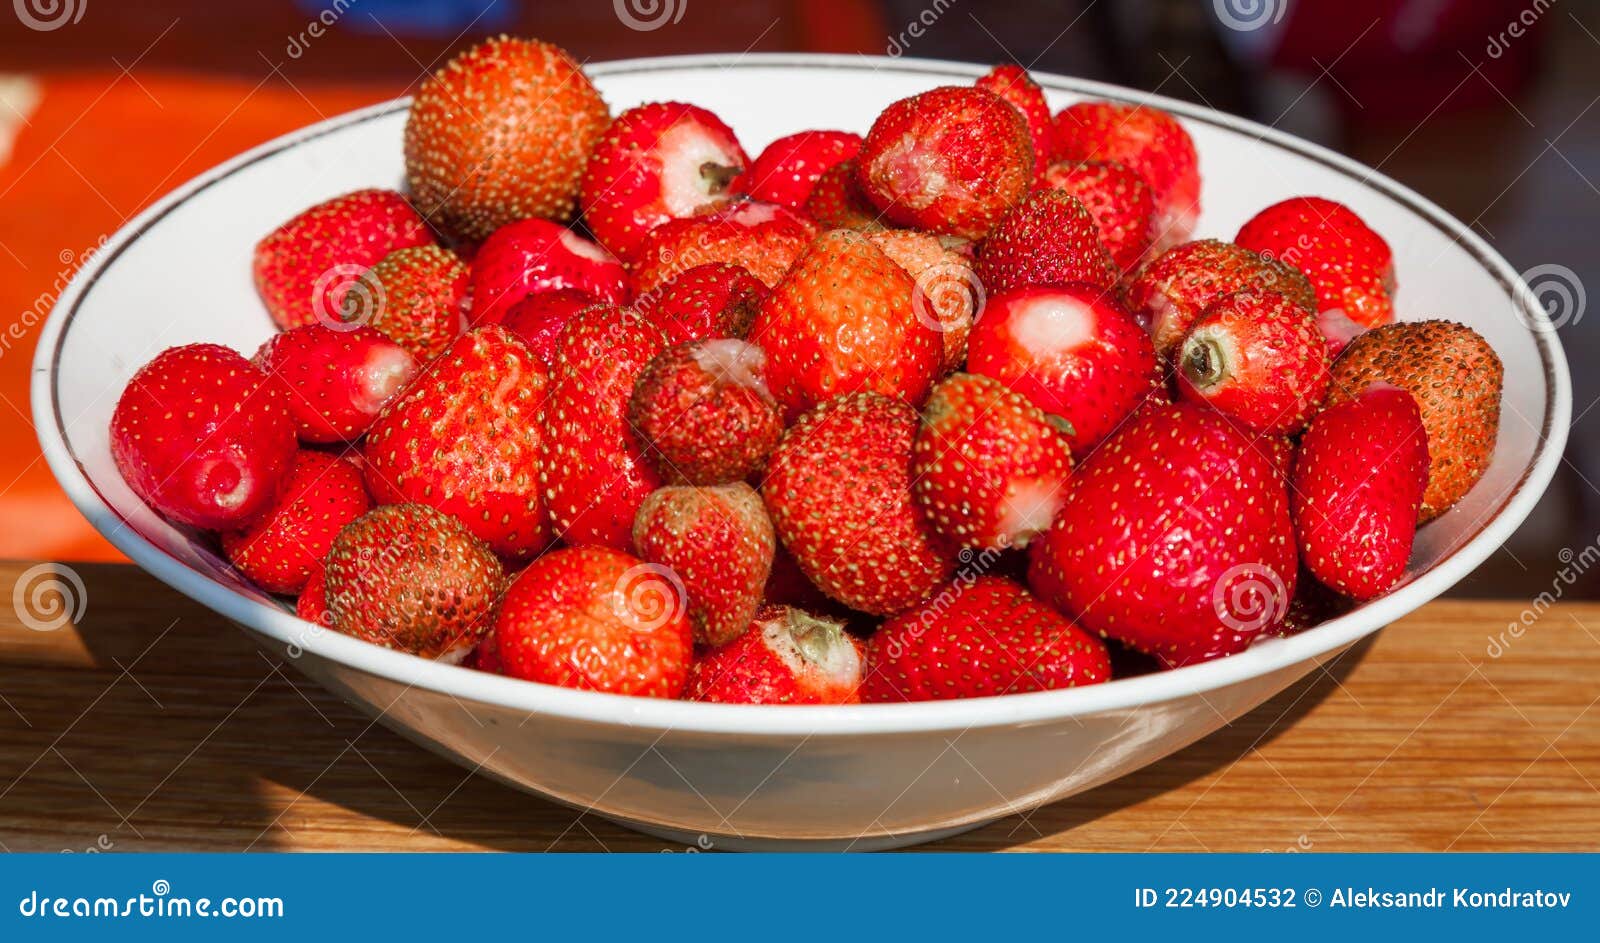 https://thumbs.dreamstime.com/z/deliciosas-fresas-jugosas-en-un-plato-blanco-frescas-cerca-del-jard%C3%ADn-casero-224904532.jpg